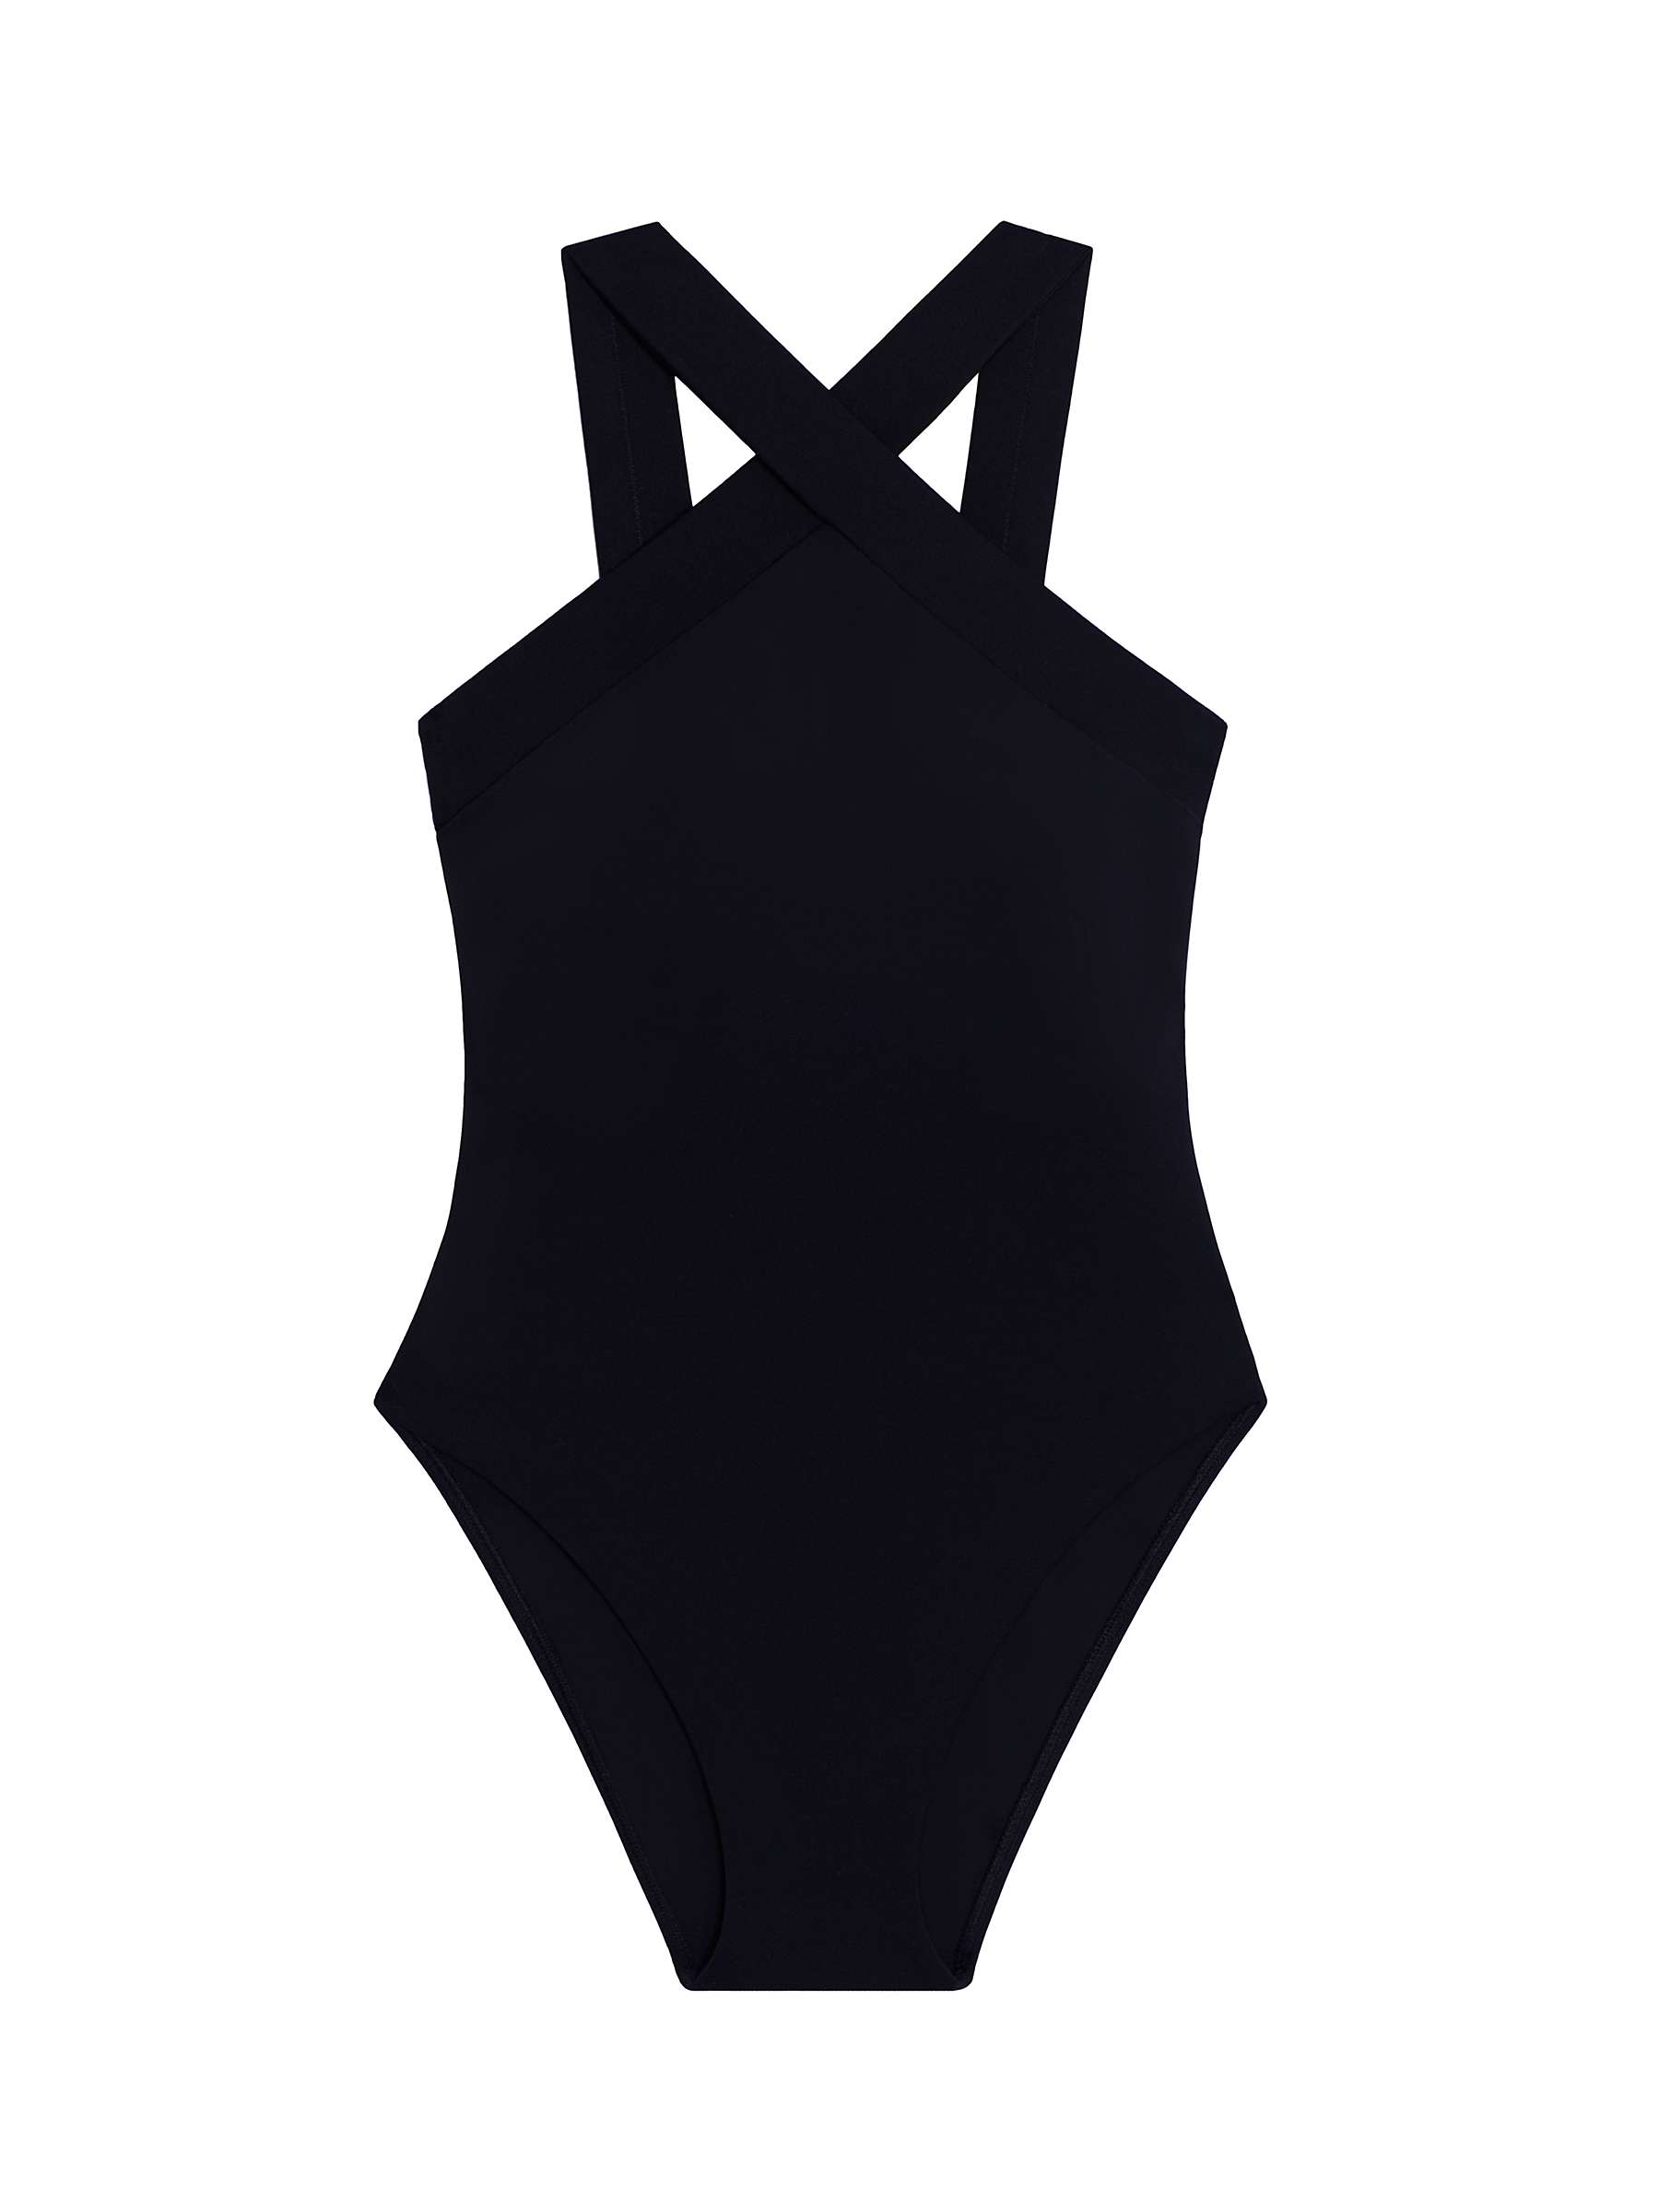 Buy Lauren Ralph Lauren Cross Front Swimsuit, Black Online at johnlewis.com